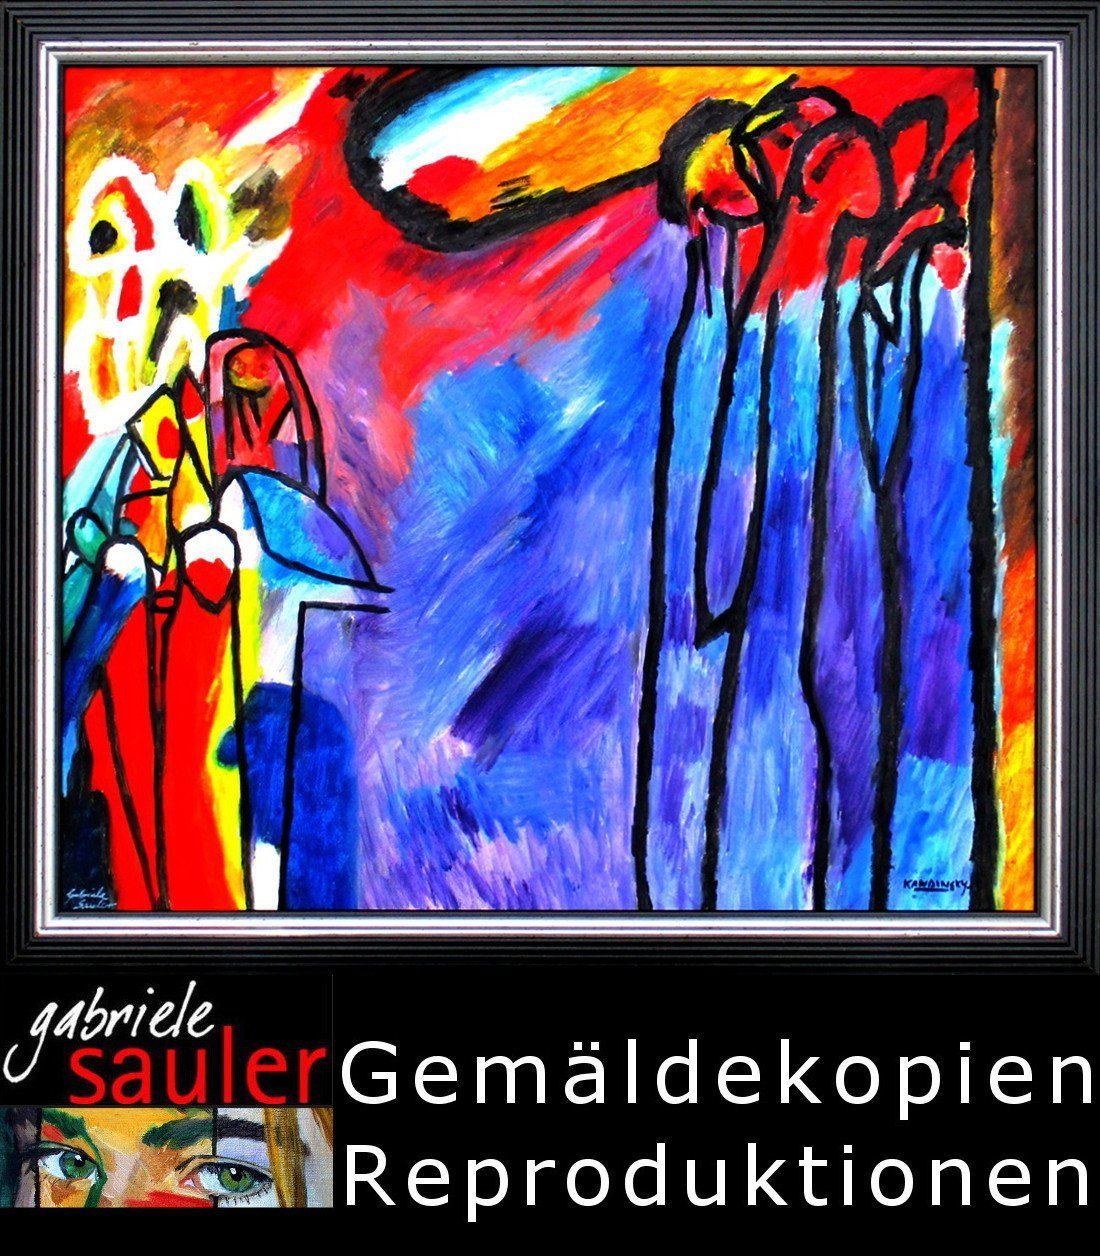 Kopie großer Maler Gemäldekopie Repros Wassily Kandinsky Improvisation 19 Öl auf LW